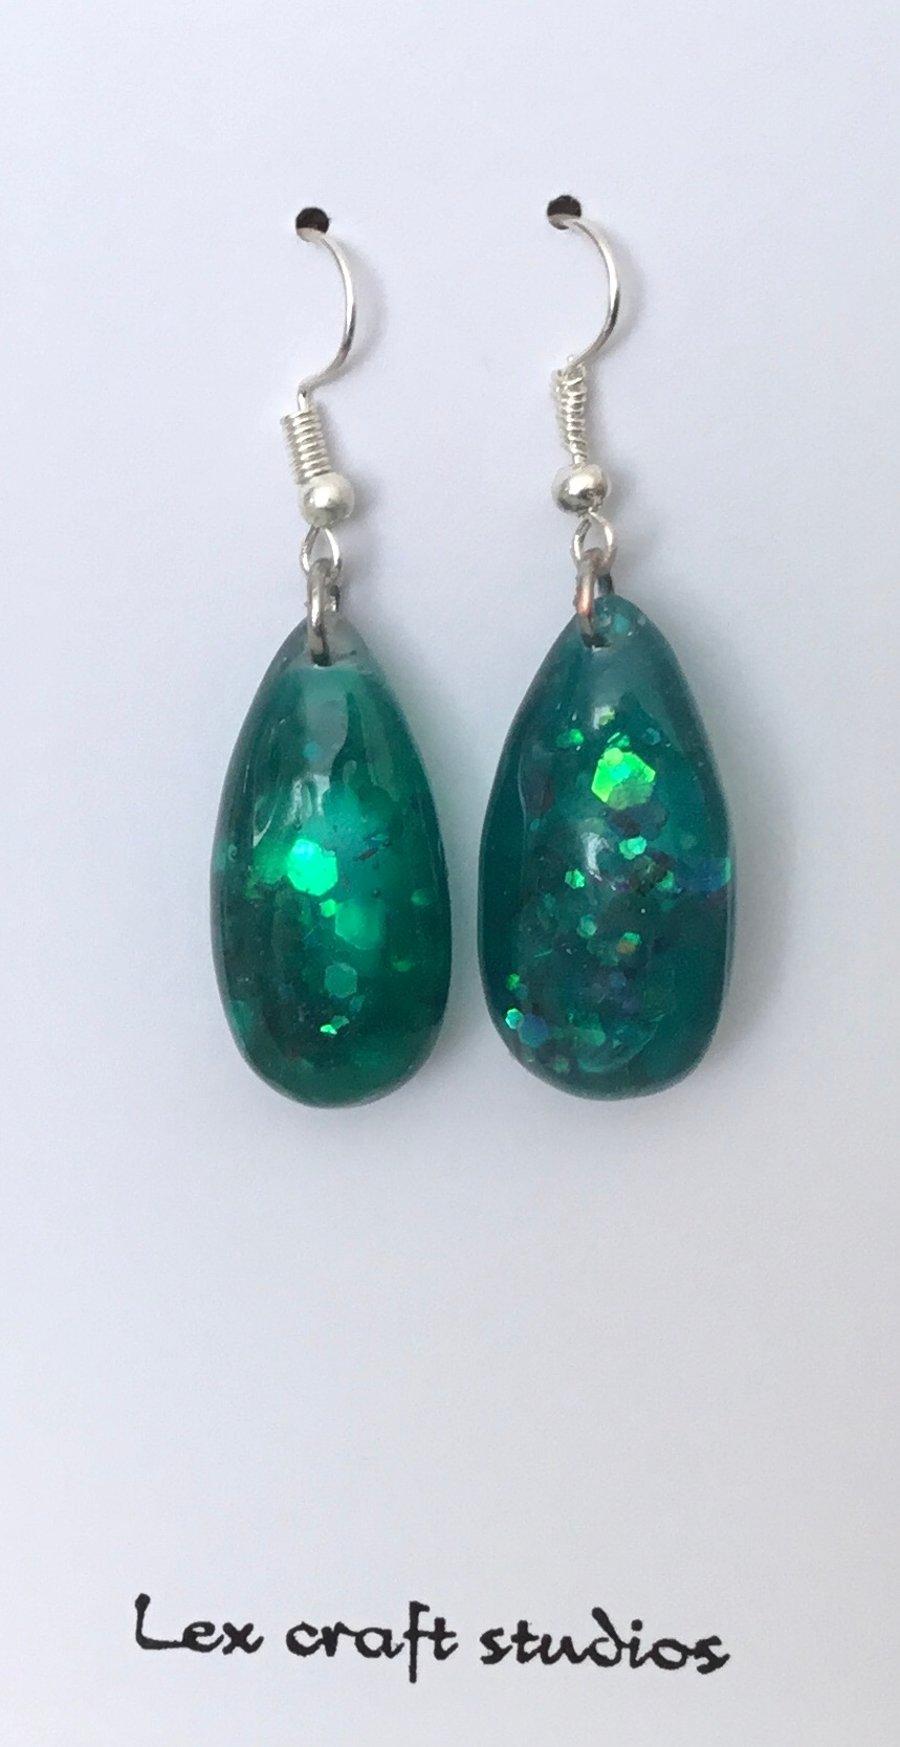 Green sparkle drop earrings 